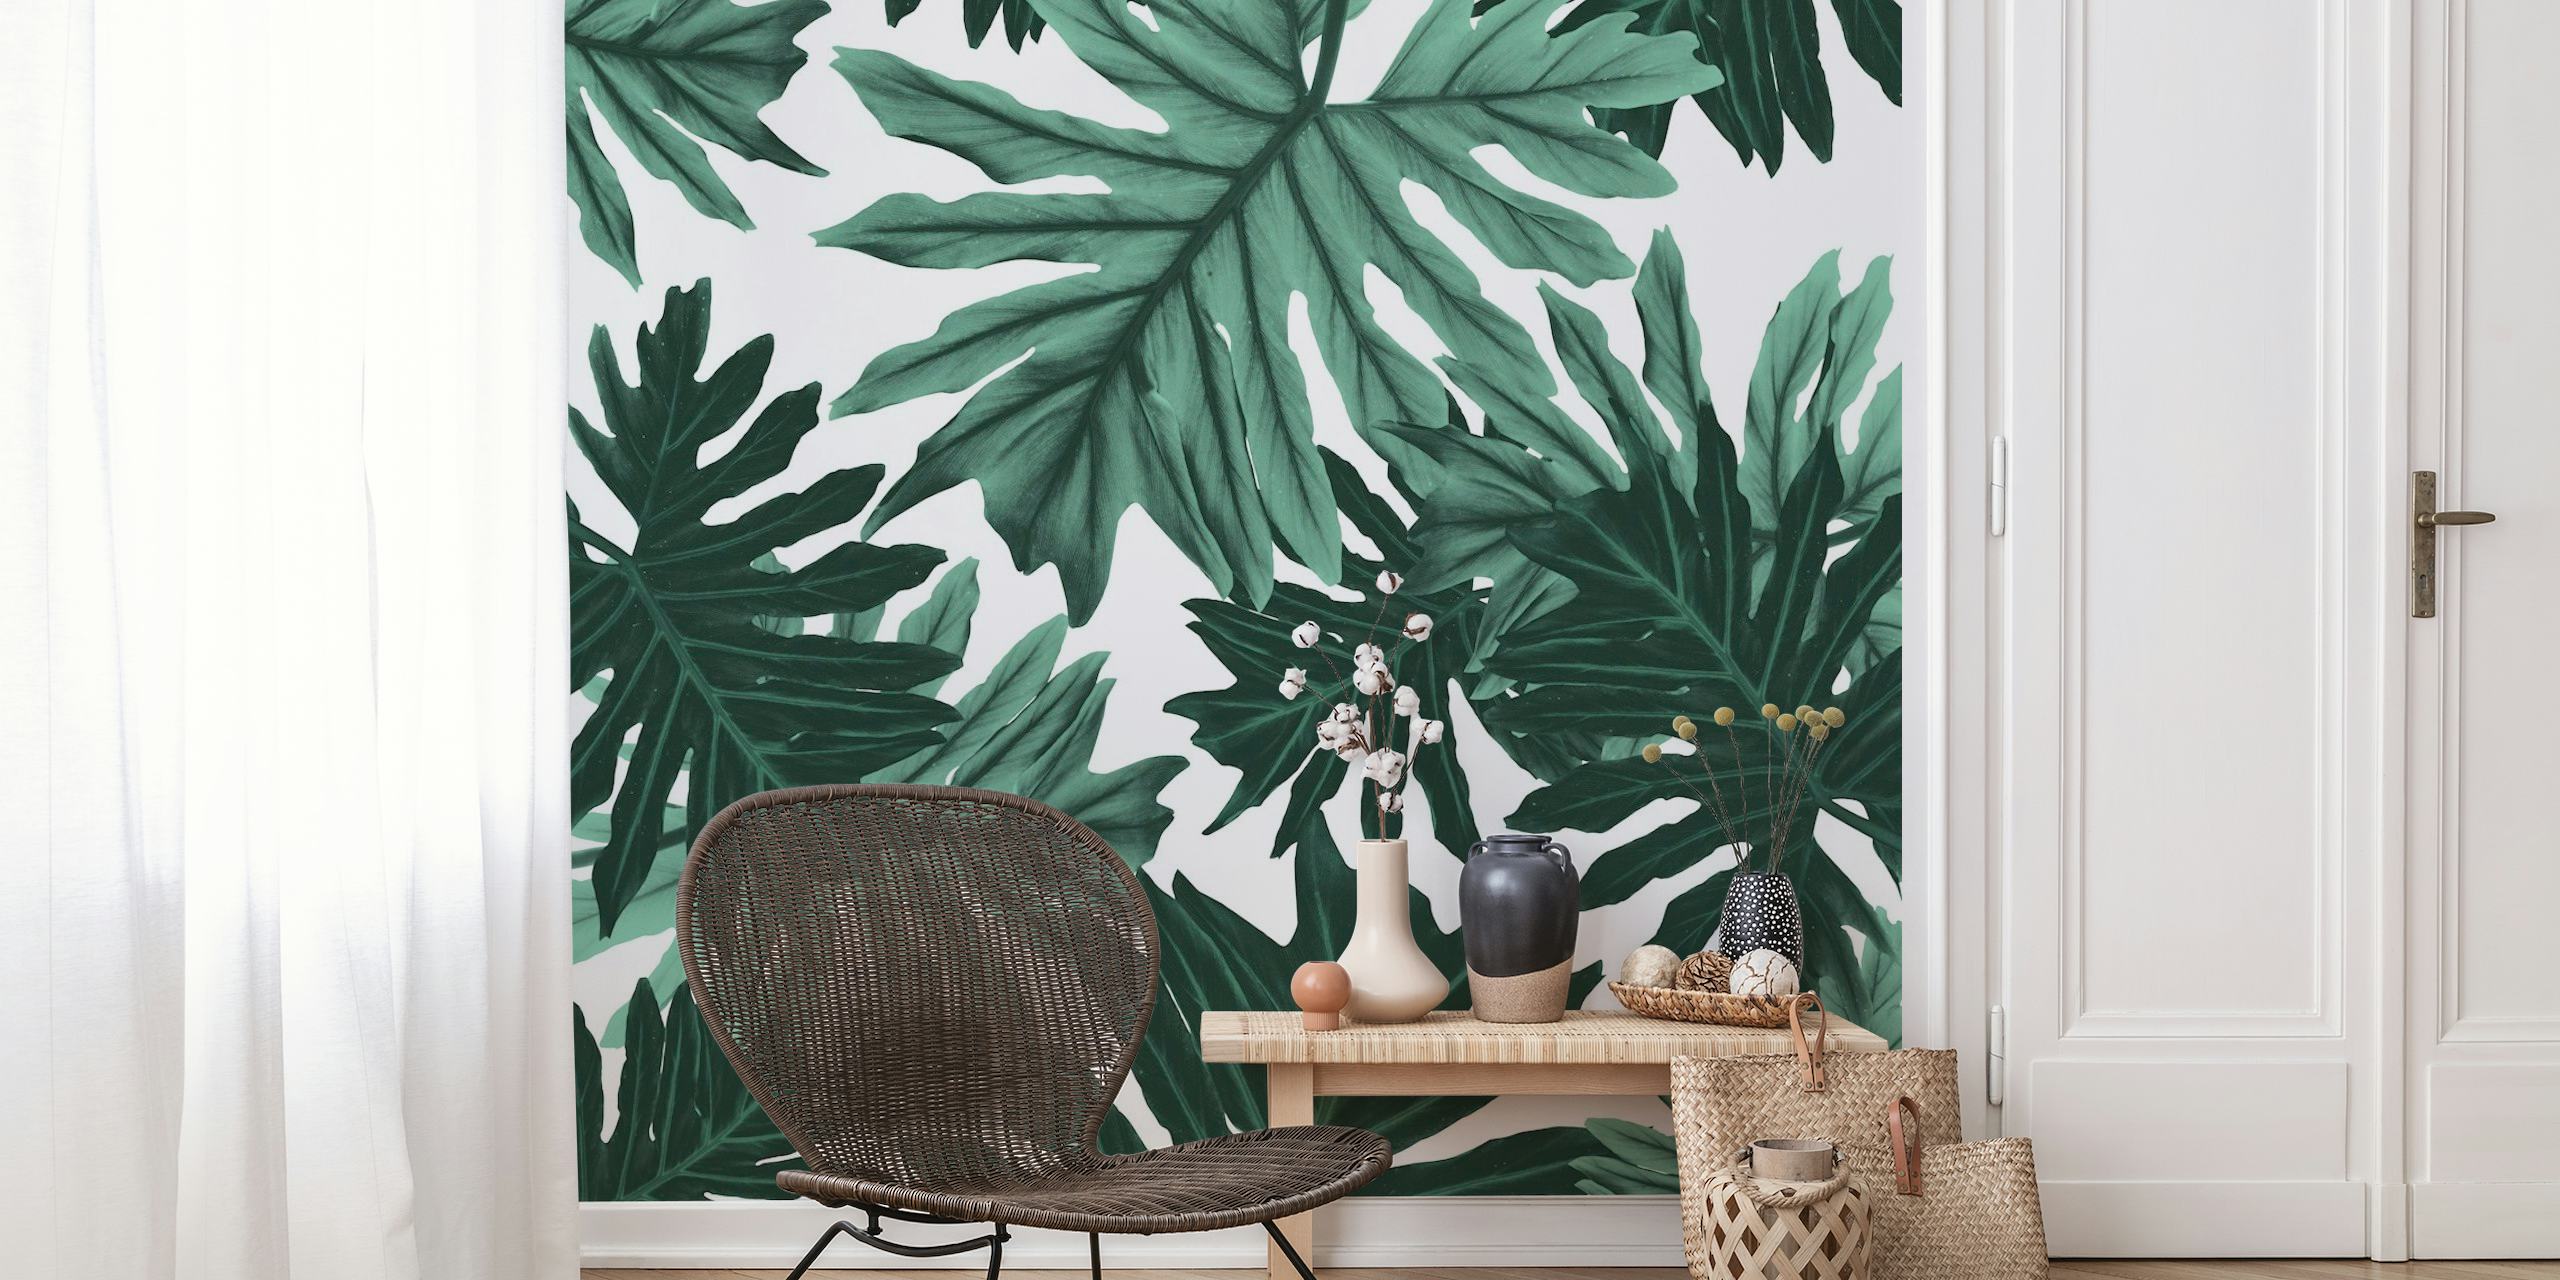 Murale représentant des feuilles de la jungle tropicale dans des tons de vert, design Philo Hope Tropical Jungle 6 pour un décor inspiré de la nature.